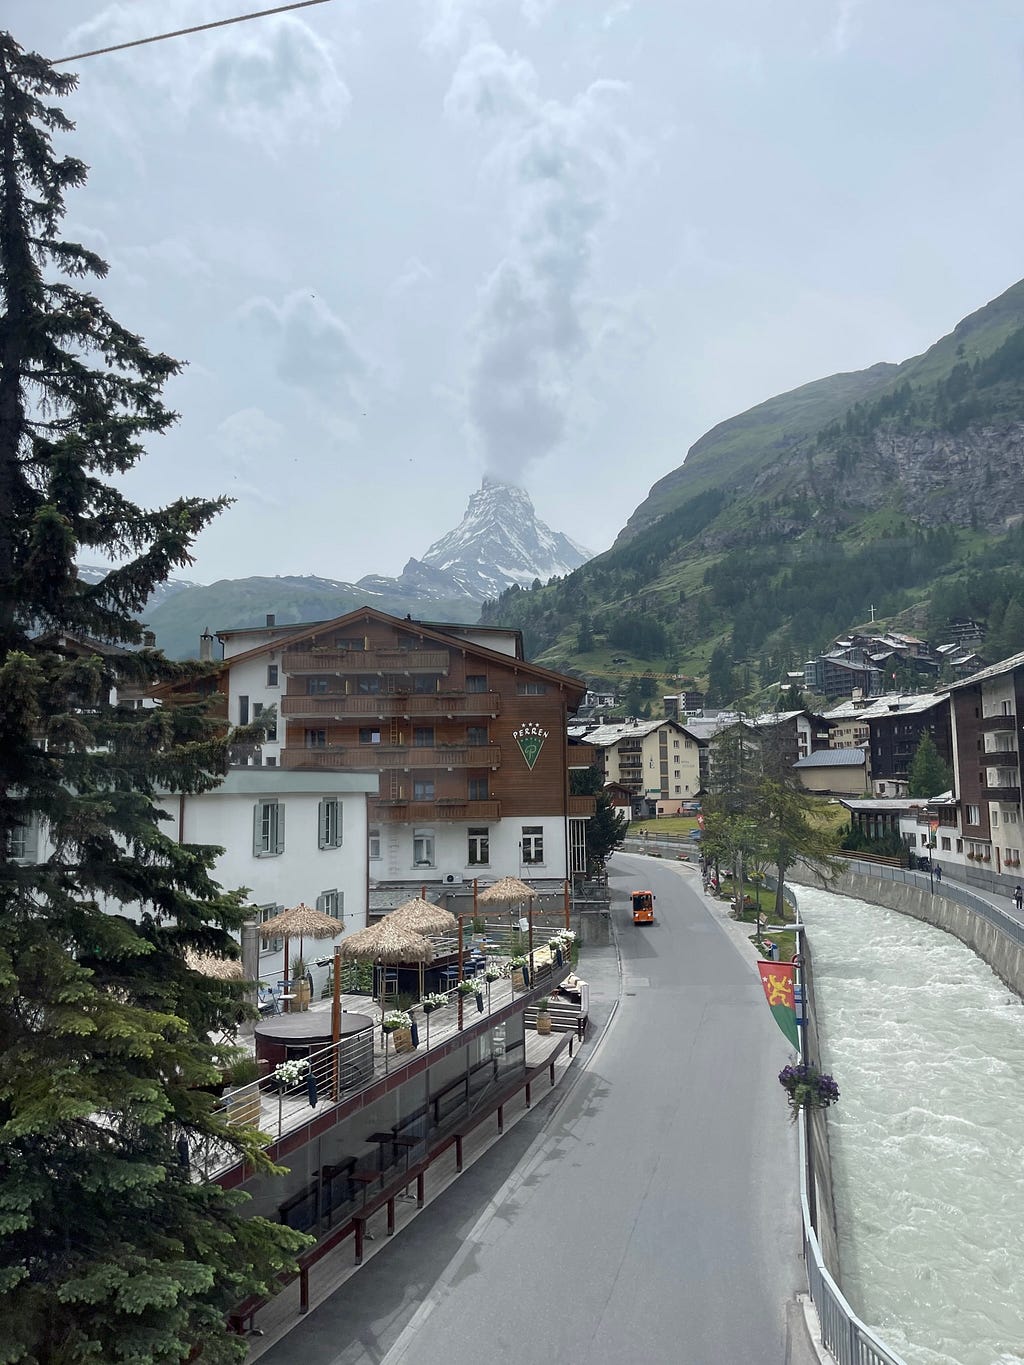 First look of the Matterhorn